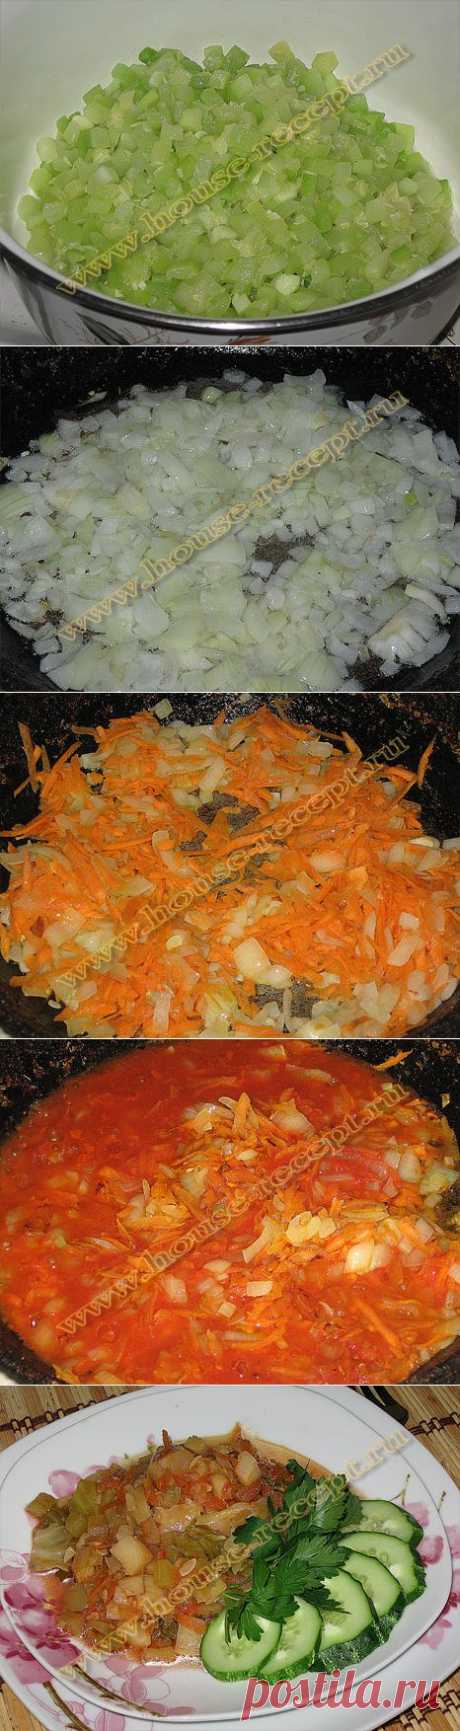 Готовим овощное рагу с кабачками, капустой и картофелем. | Ваши любимые рецепты
В сезон, лета овощное рагу довольно вкусное и актуальное блюдо. Собрав все свежие овощи, приготовим овощное рагу, с кабачками, капустой, картофелем, луком и морковкой.